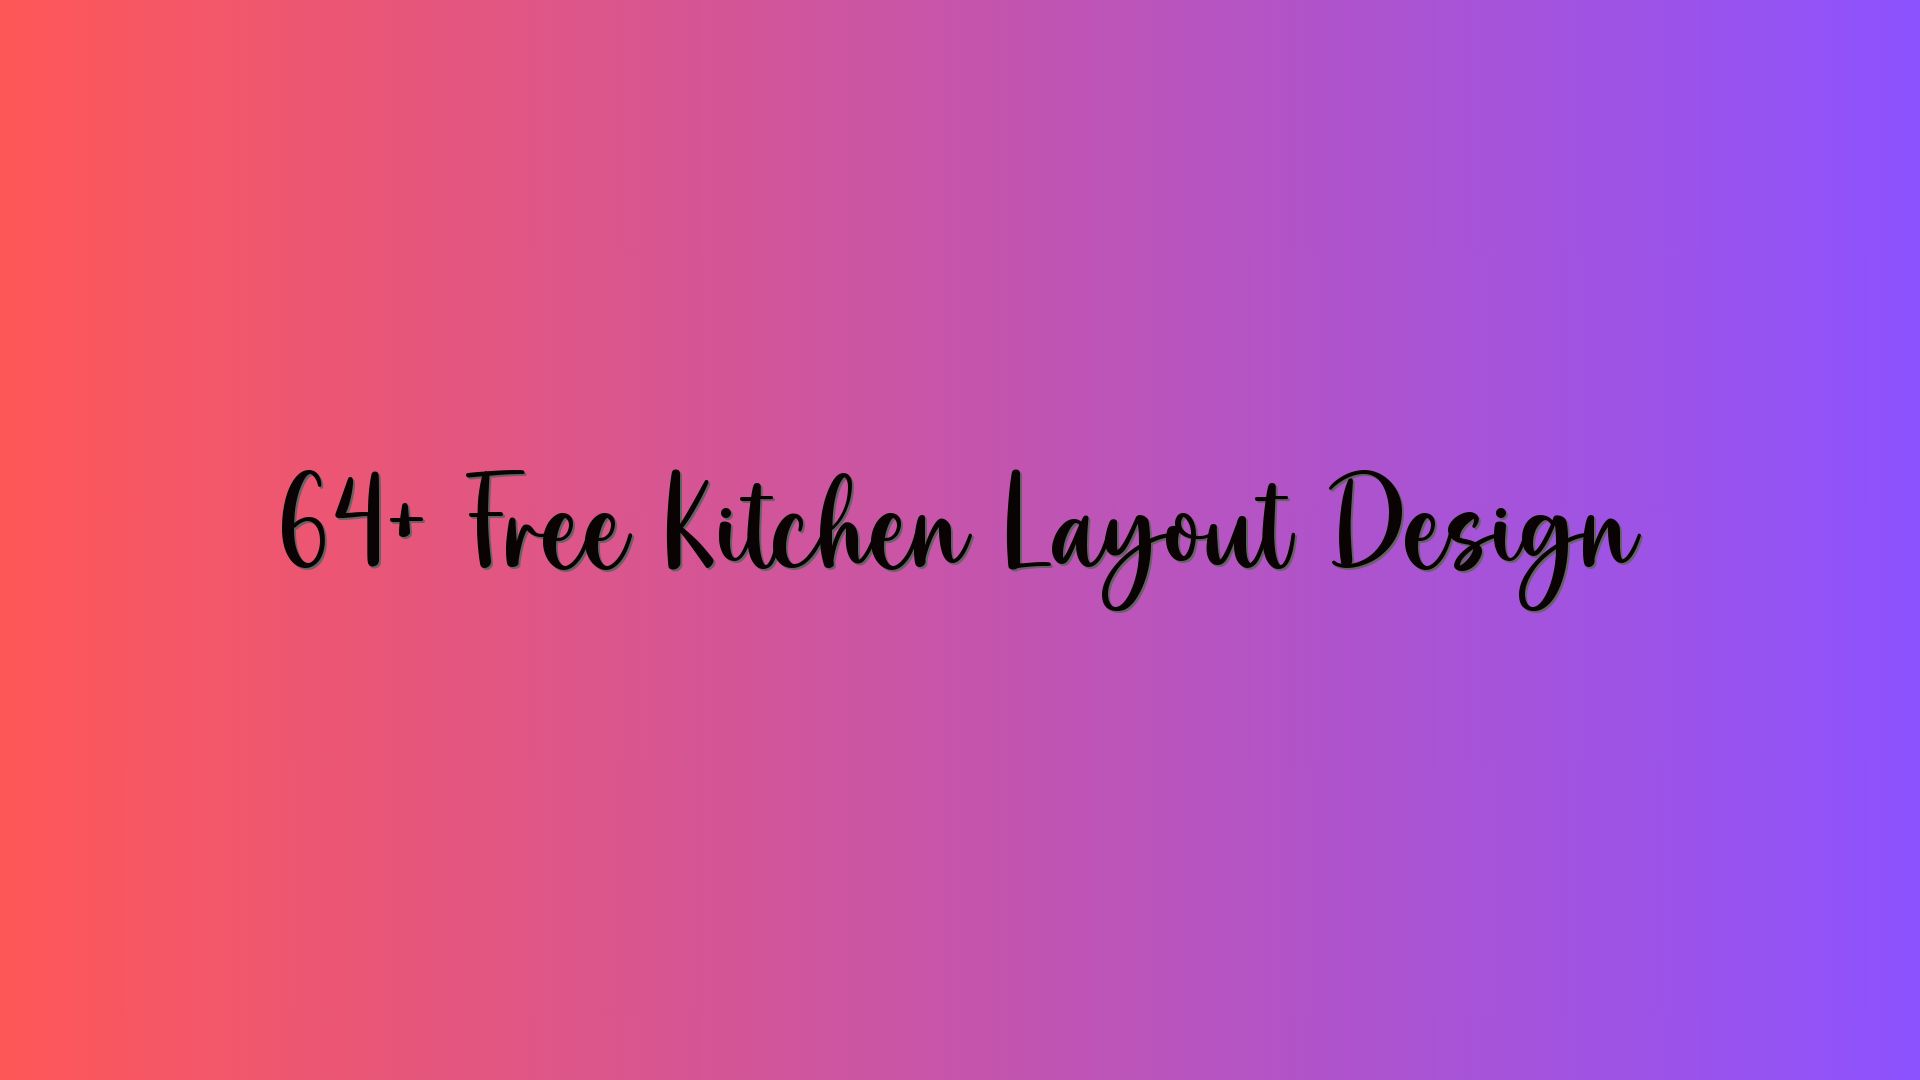 64+ Free Kitchen Layout Design